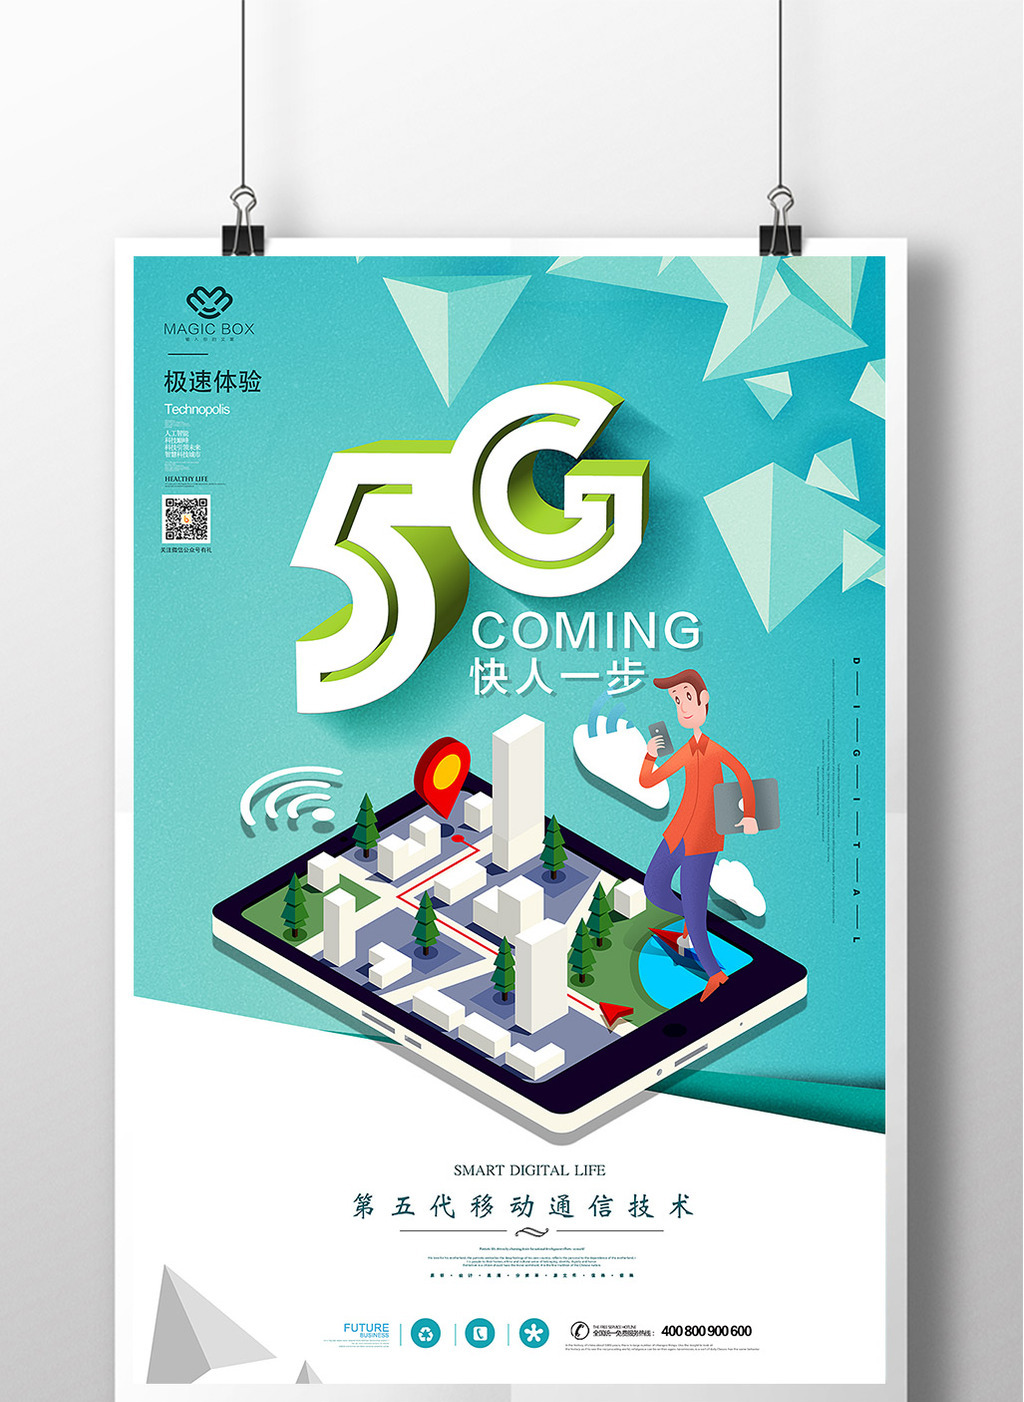 5G 网络升级服务的期望与现实落差，广告宣传是否可信？  第3张